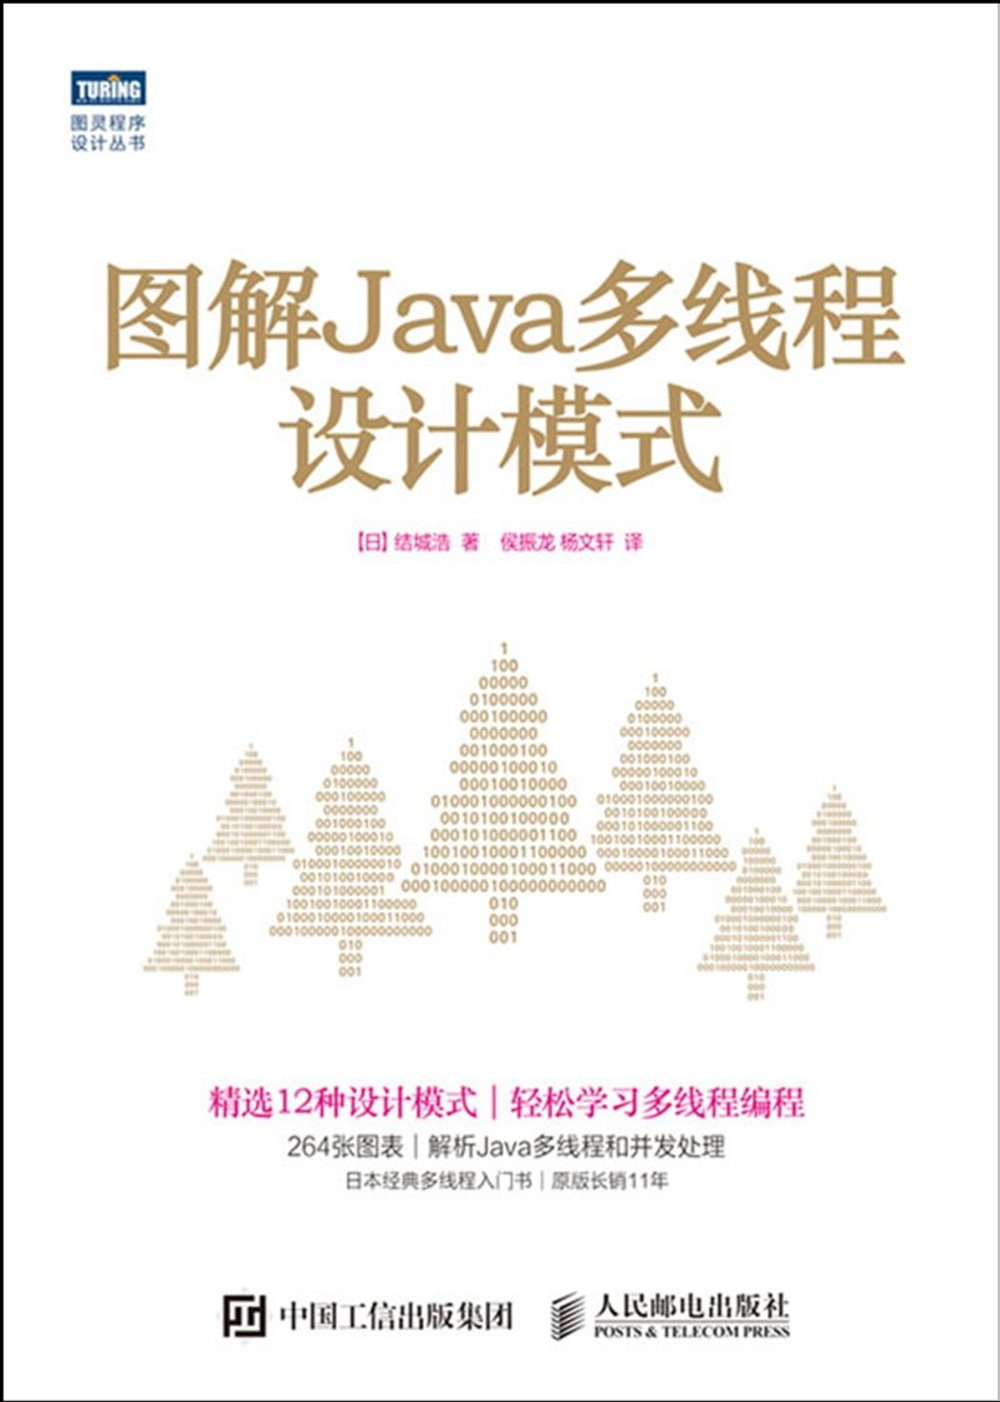 圖解Java多線程設計模式